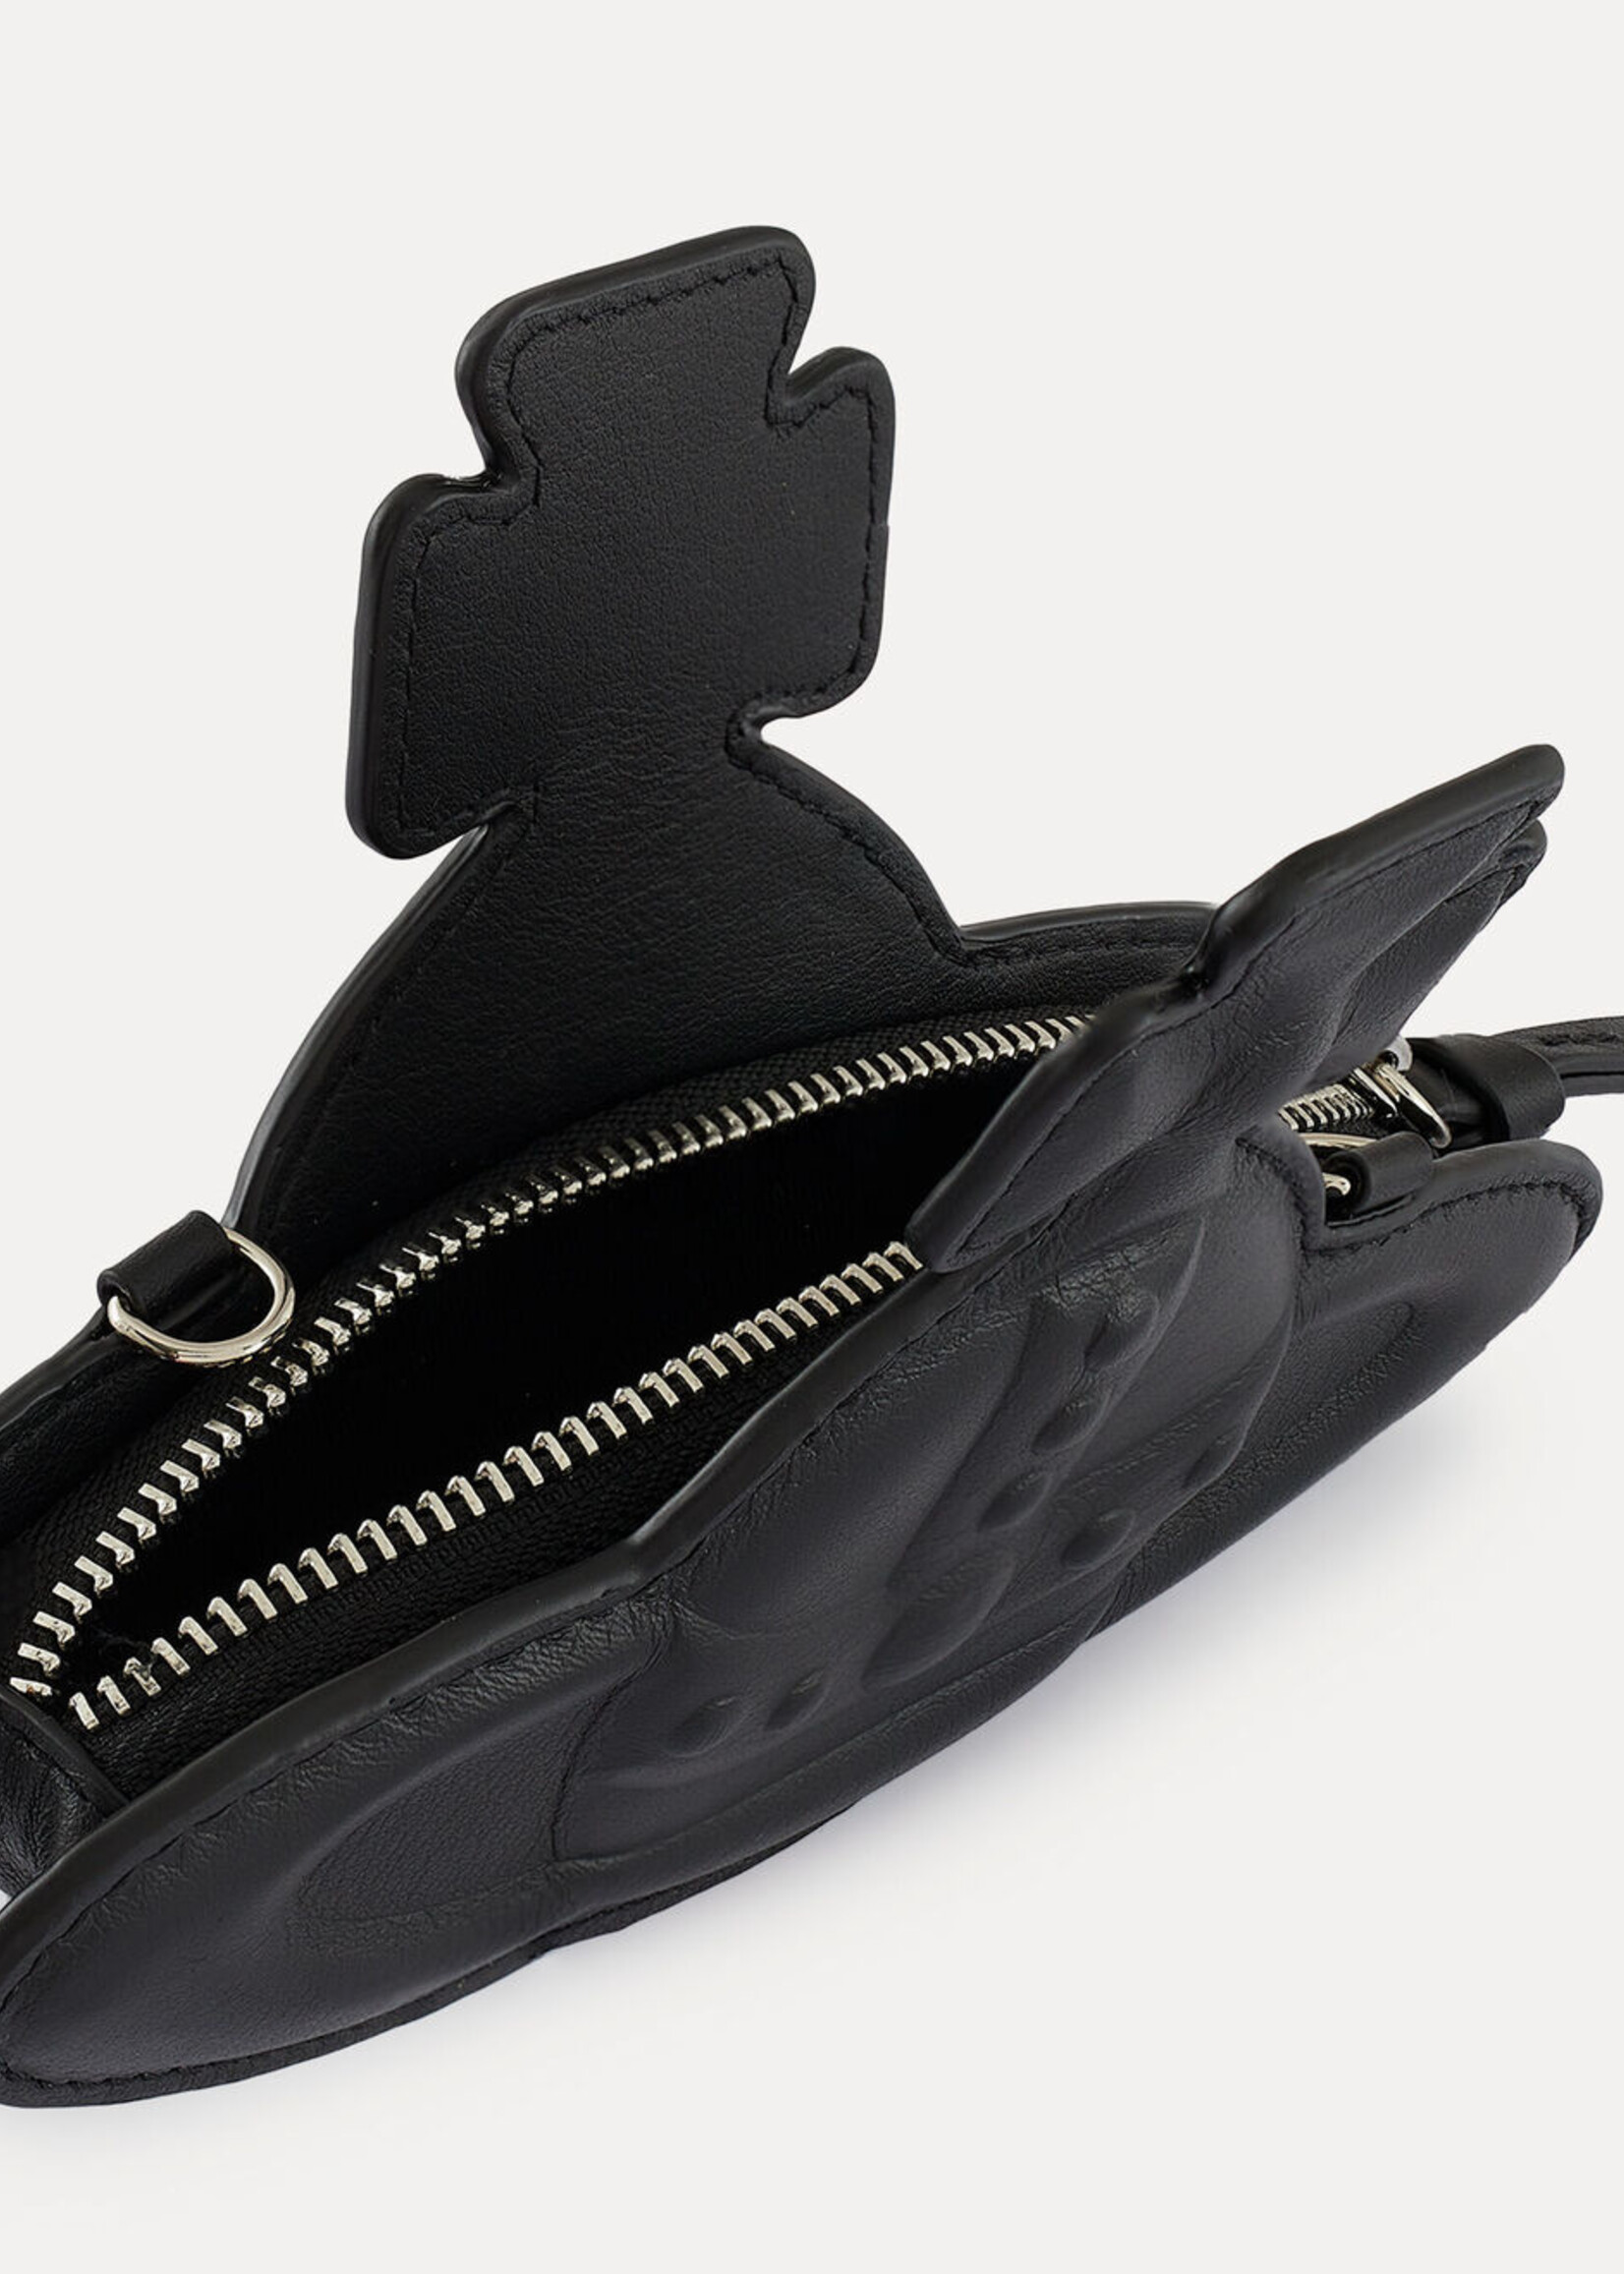 VIVIENNE WESTWOOD 3-D Orb Nano Crossbody Bag in Black